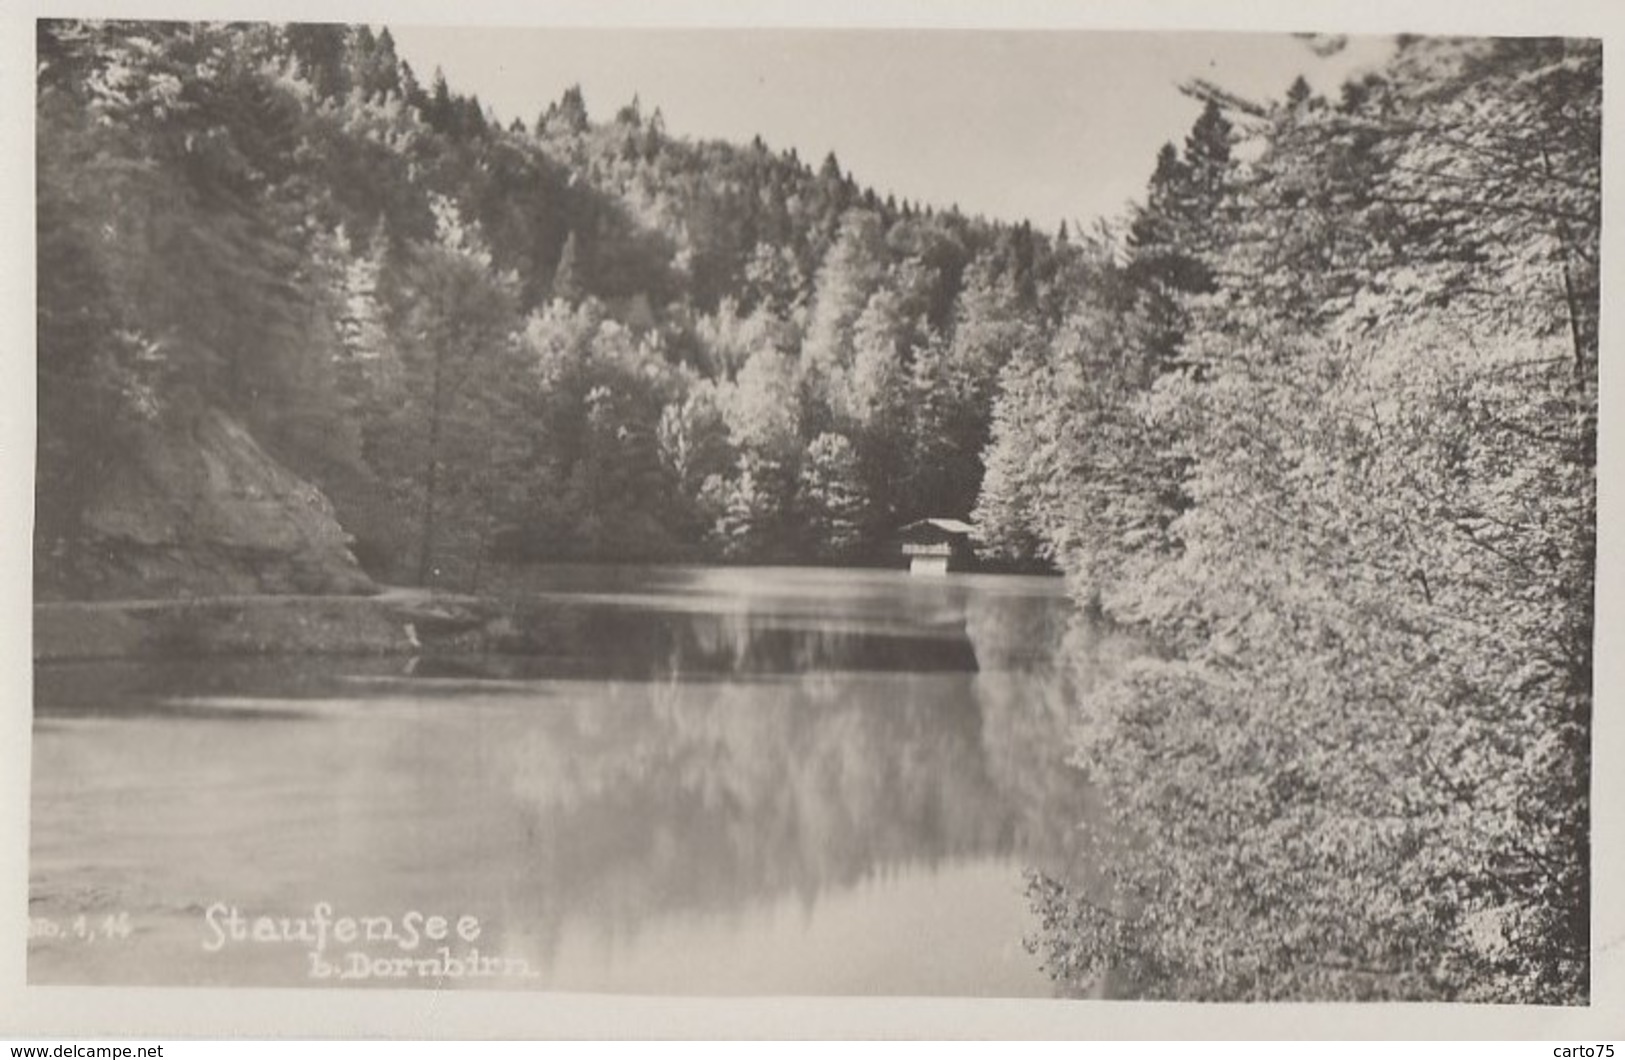 Autriche - Staufensee Bei Dornbirn  - 1945 - Dornbirn